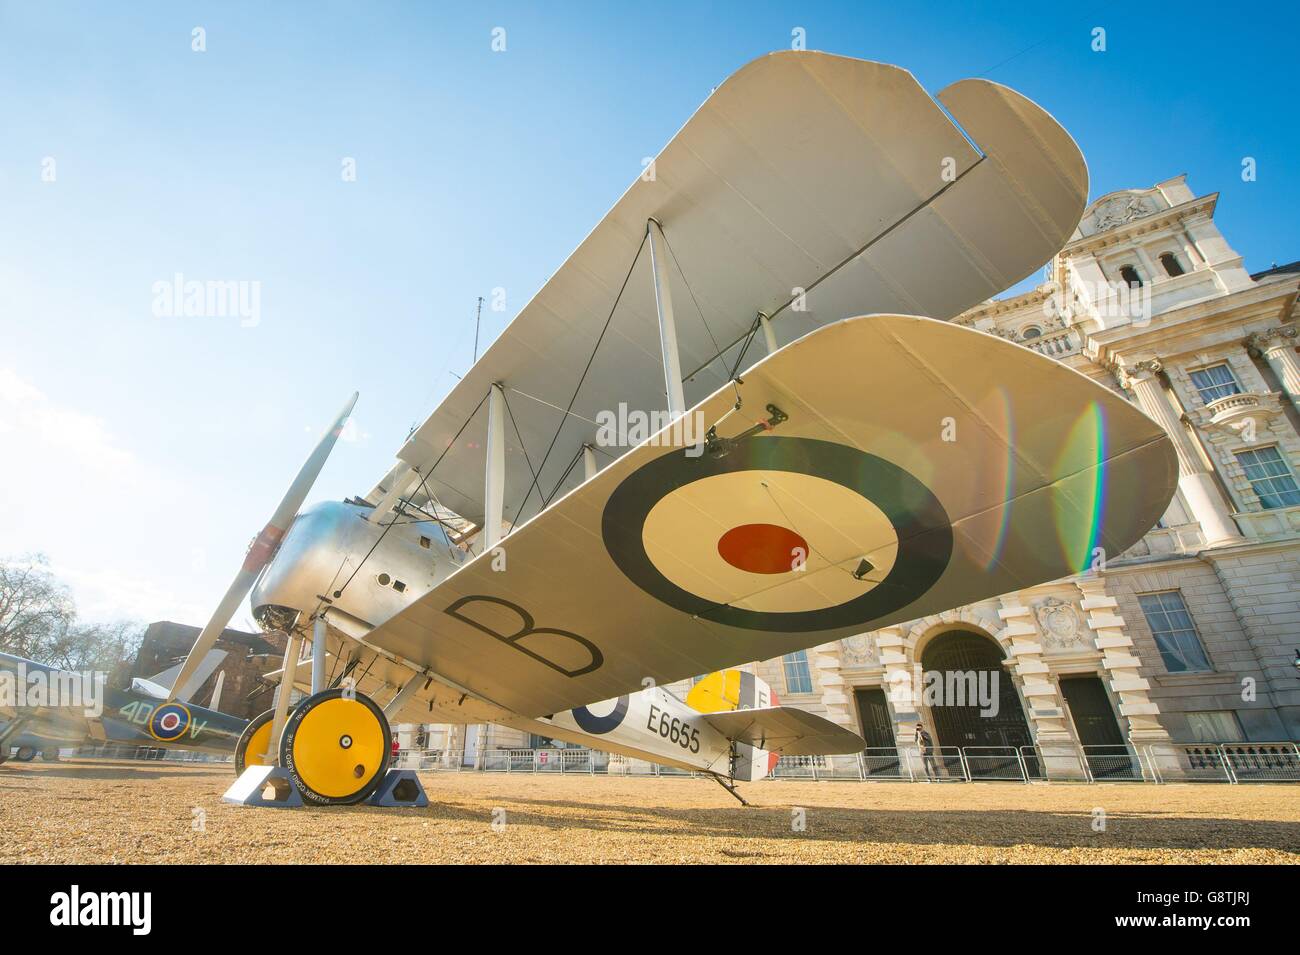 Un Sopwith Snipe est exposé sur le Horse Guards Parade, dans le centre de Londres, avant le 100e anniversaire de la RAF qui a été formée en 2018. Banque D'Images